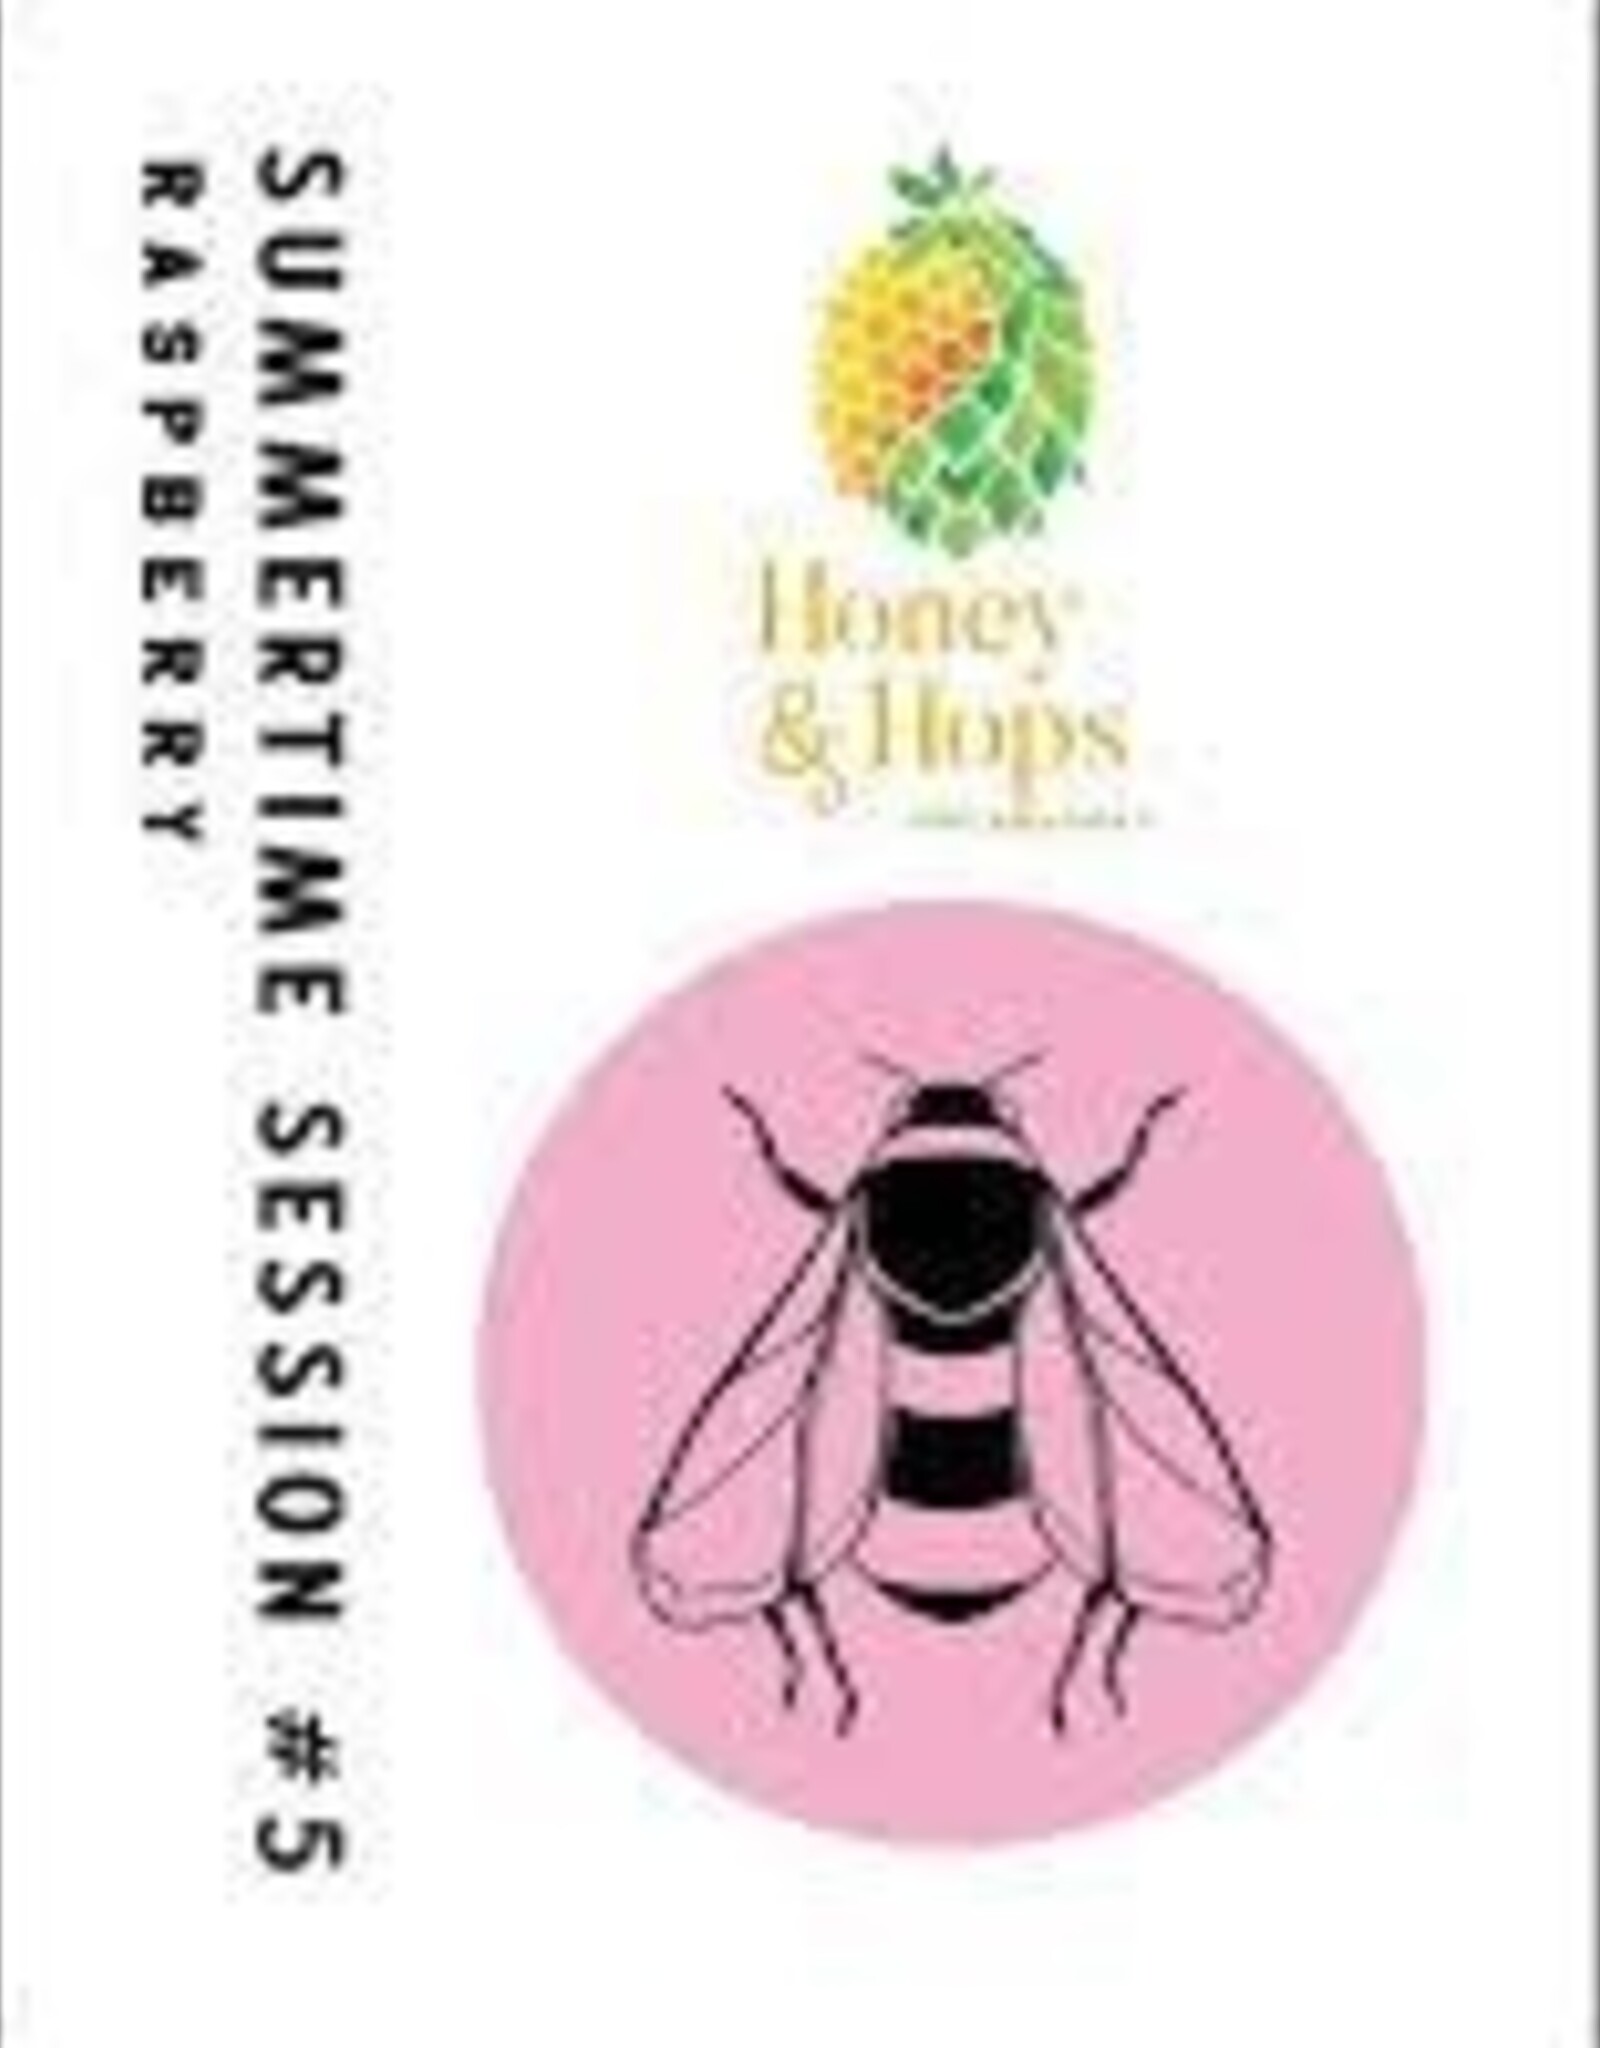 Honey & Hops Brew Works, Summertime Session #5, Raspberry